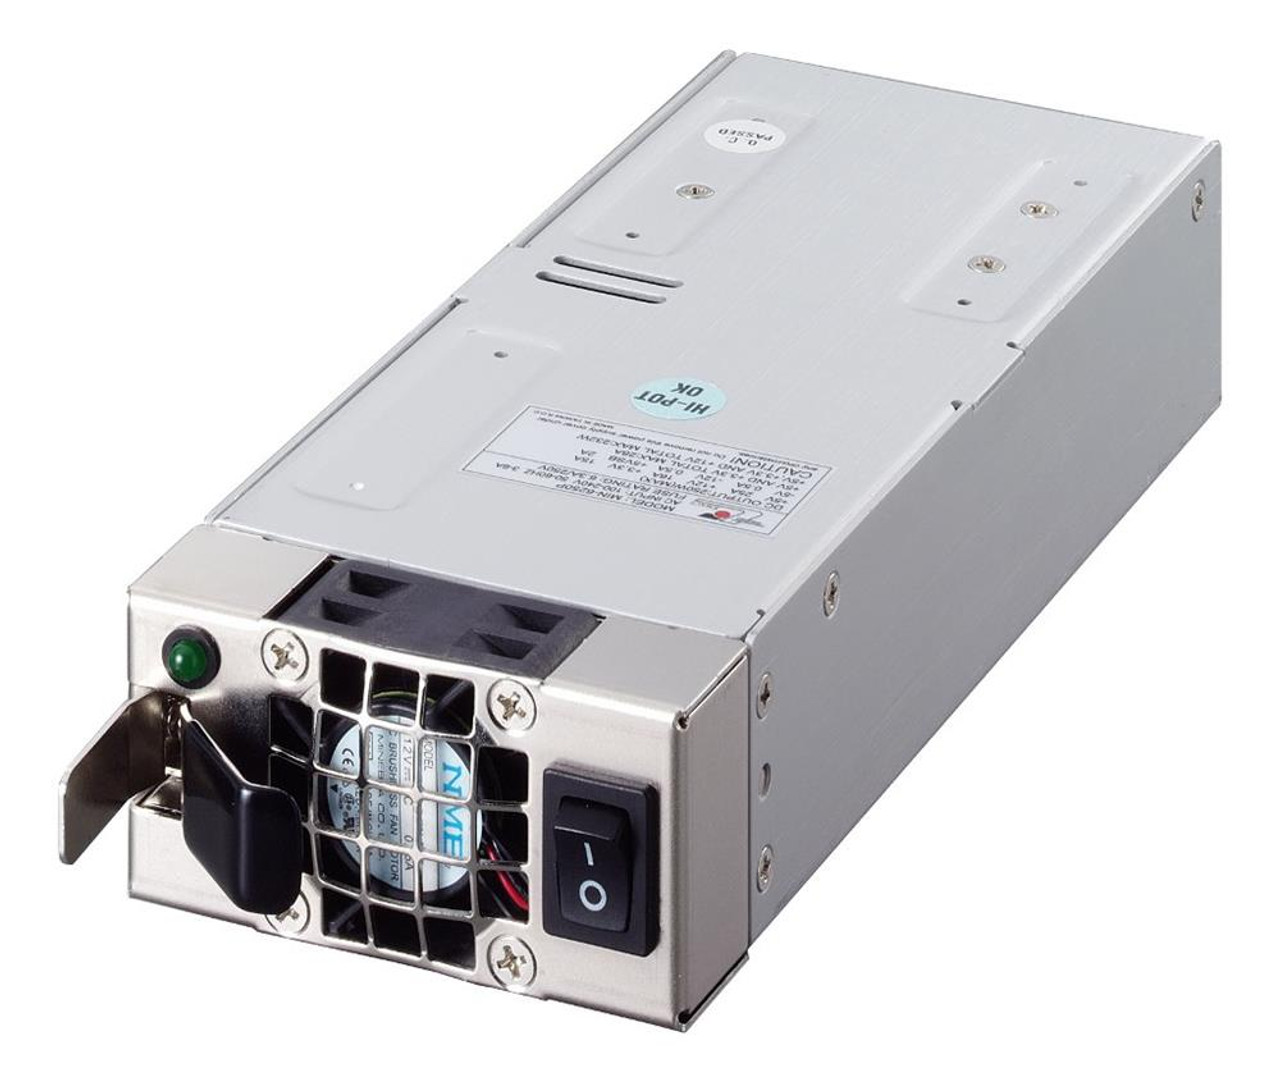 MIN-6250P (V1) EMACS Hot Swap Power Supply MIN-6250P